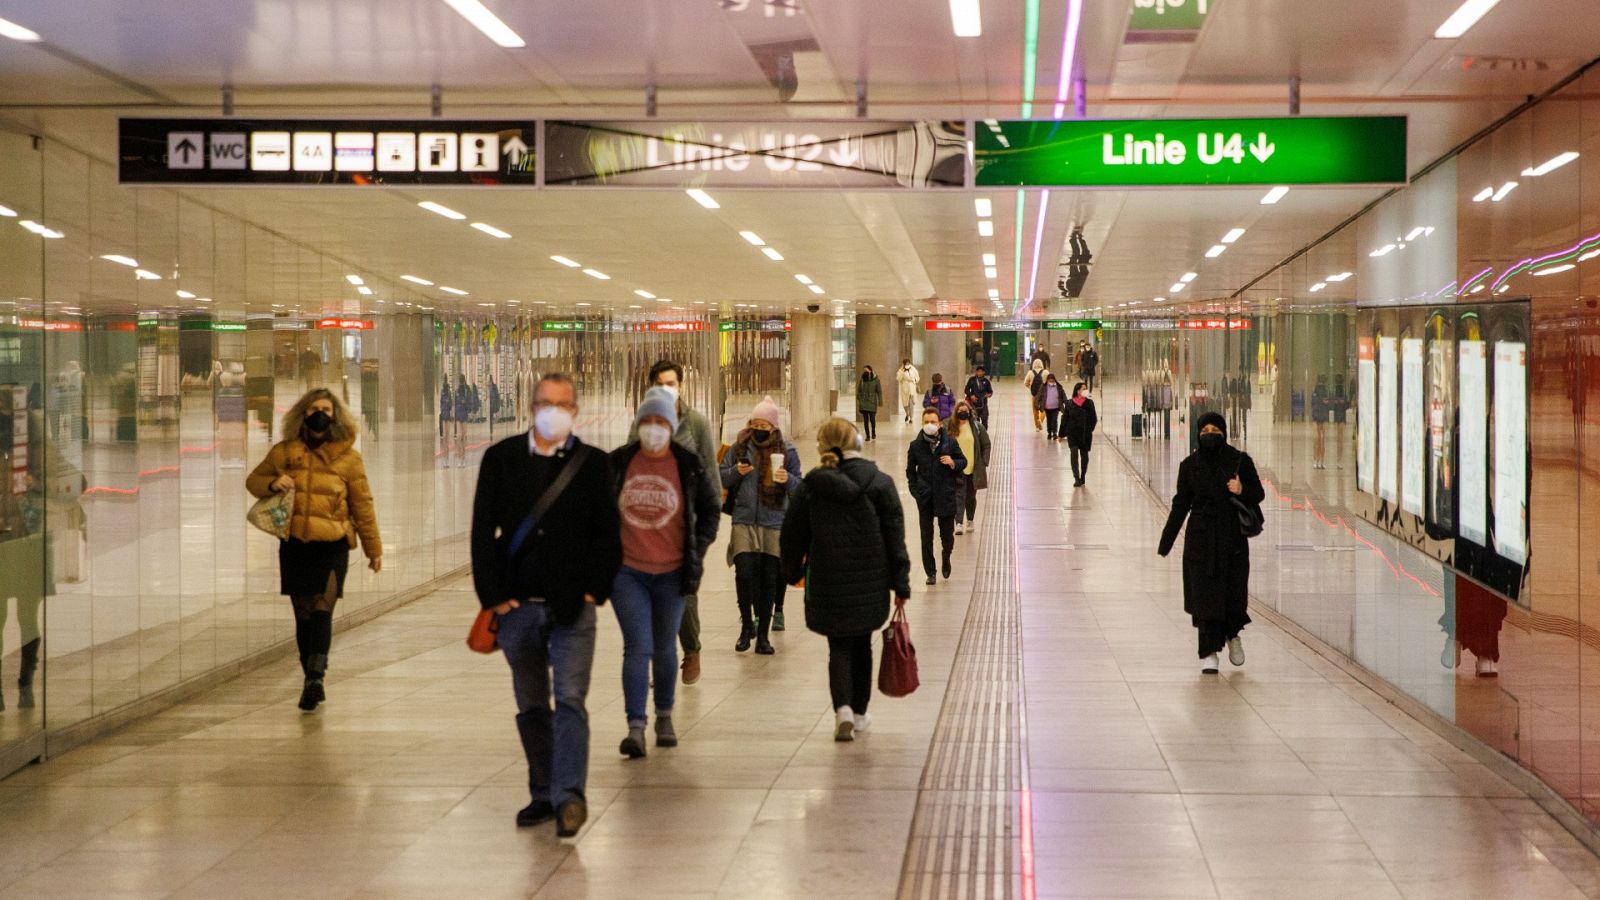 Una estación de metro en Viena, Austria, país donde el gobierno ha impuesto el cuaro confinamento general contra la pandemia de COVID-19